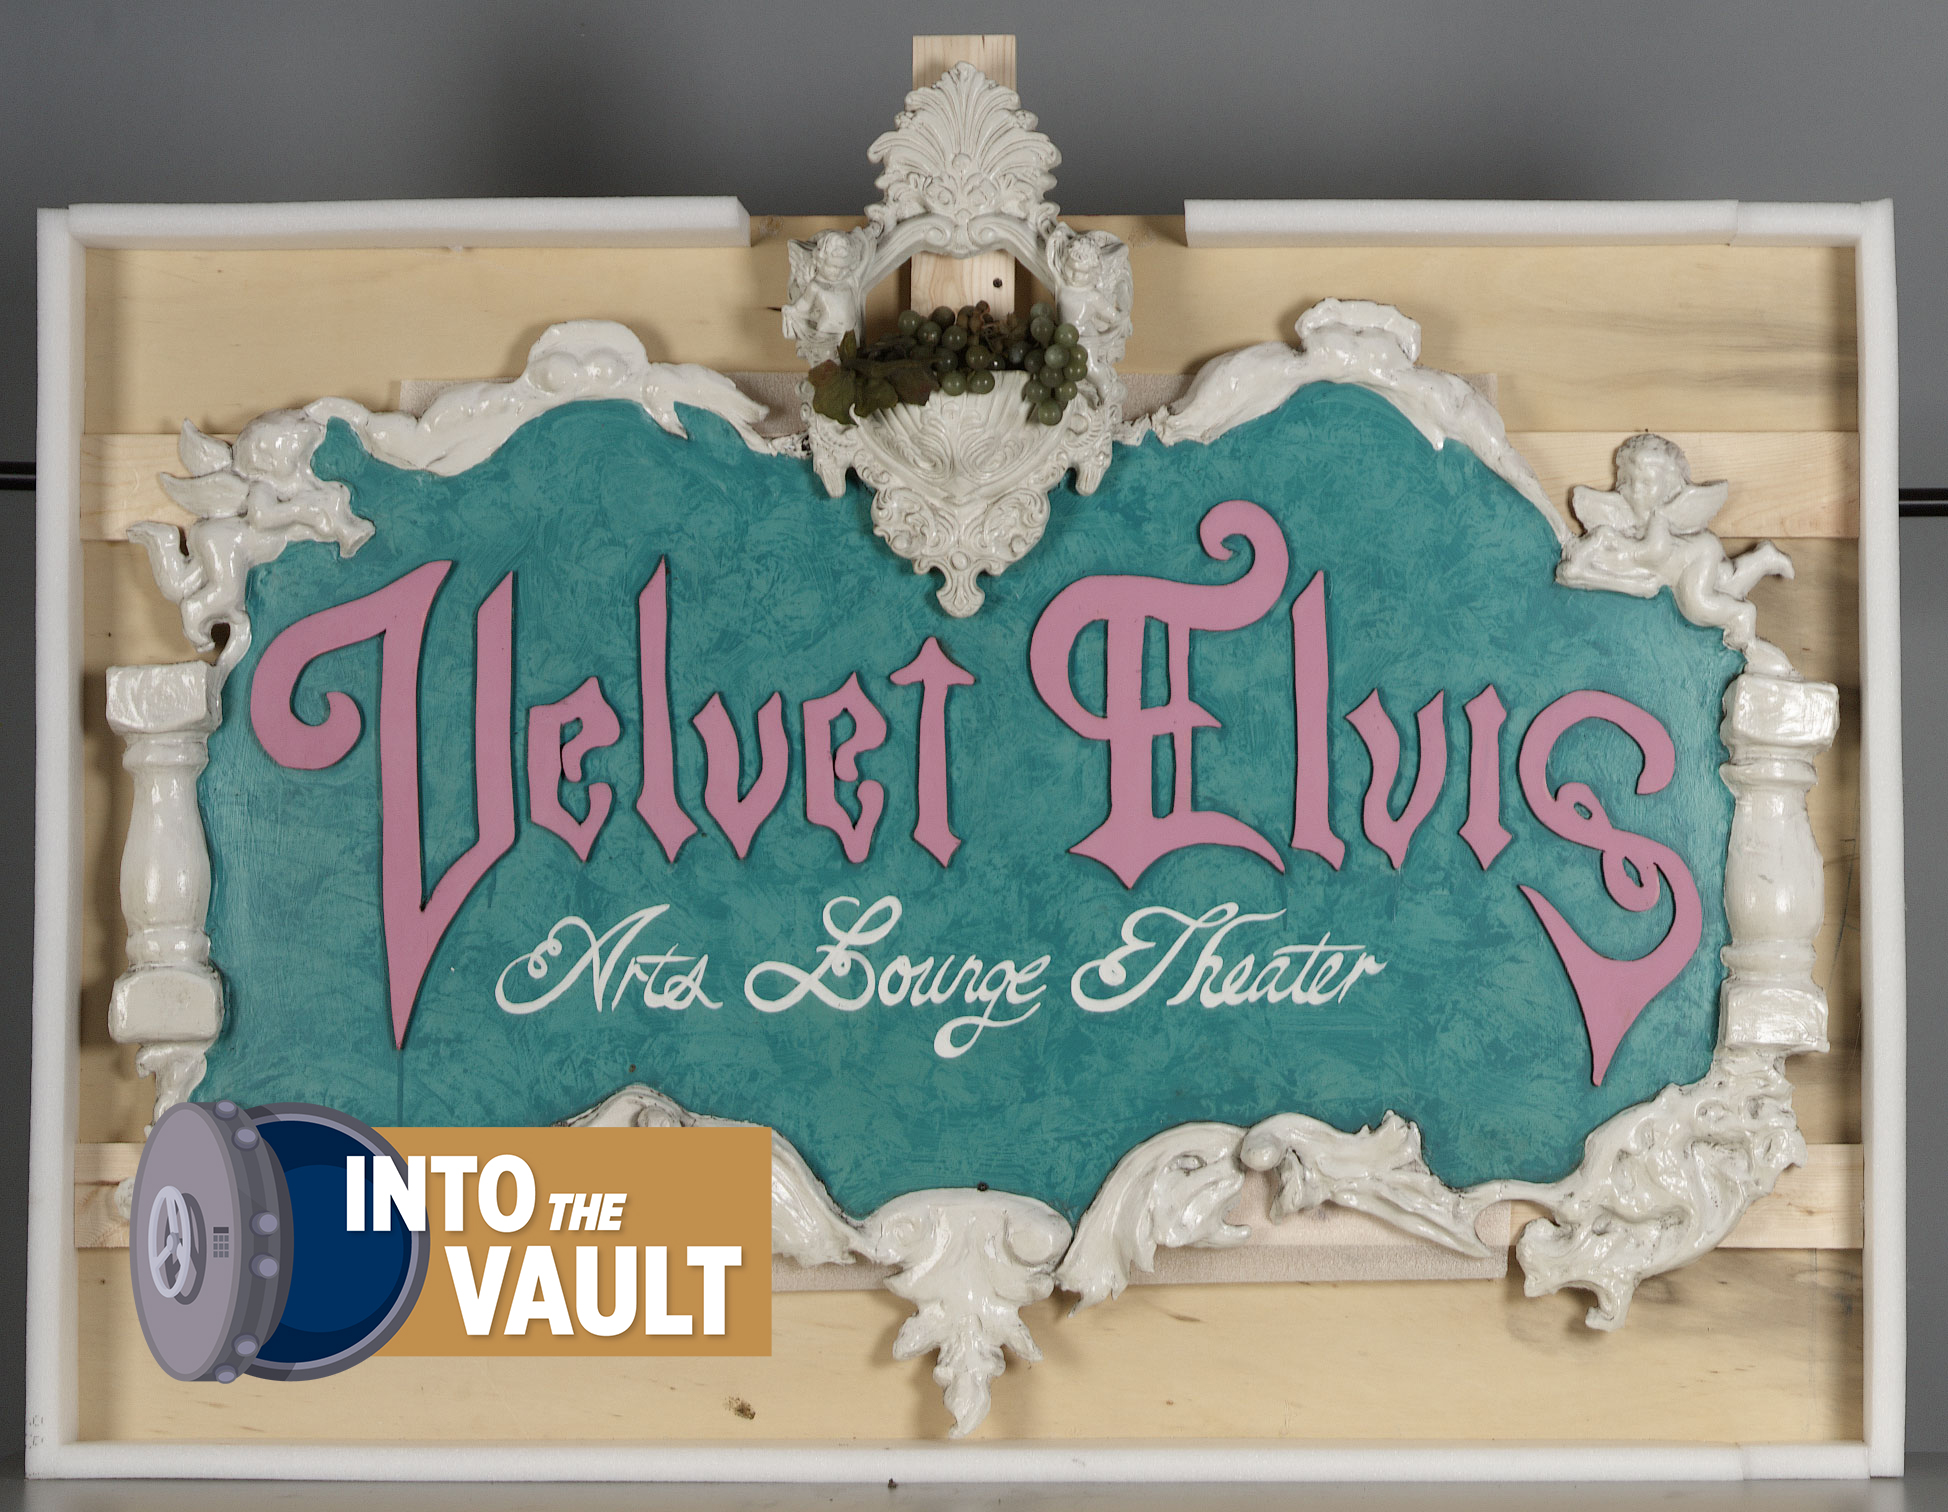 Velvet Elvis Arts Lounge Theater Sign